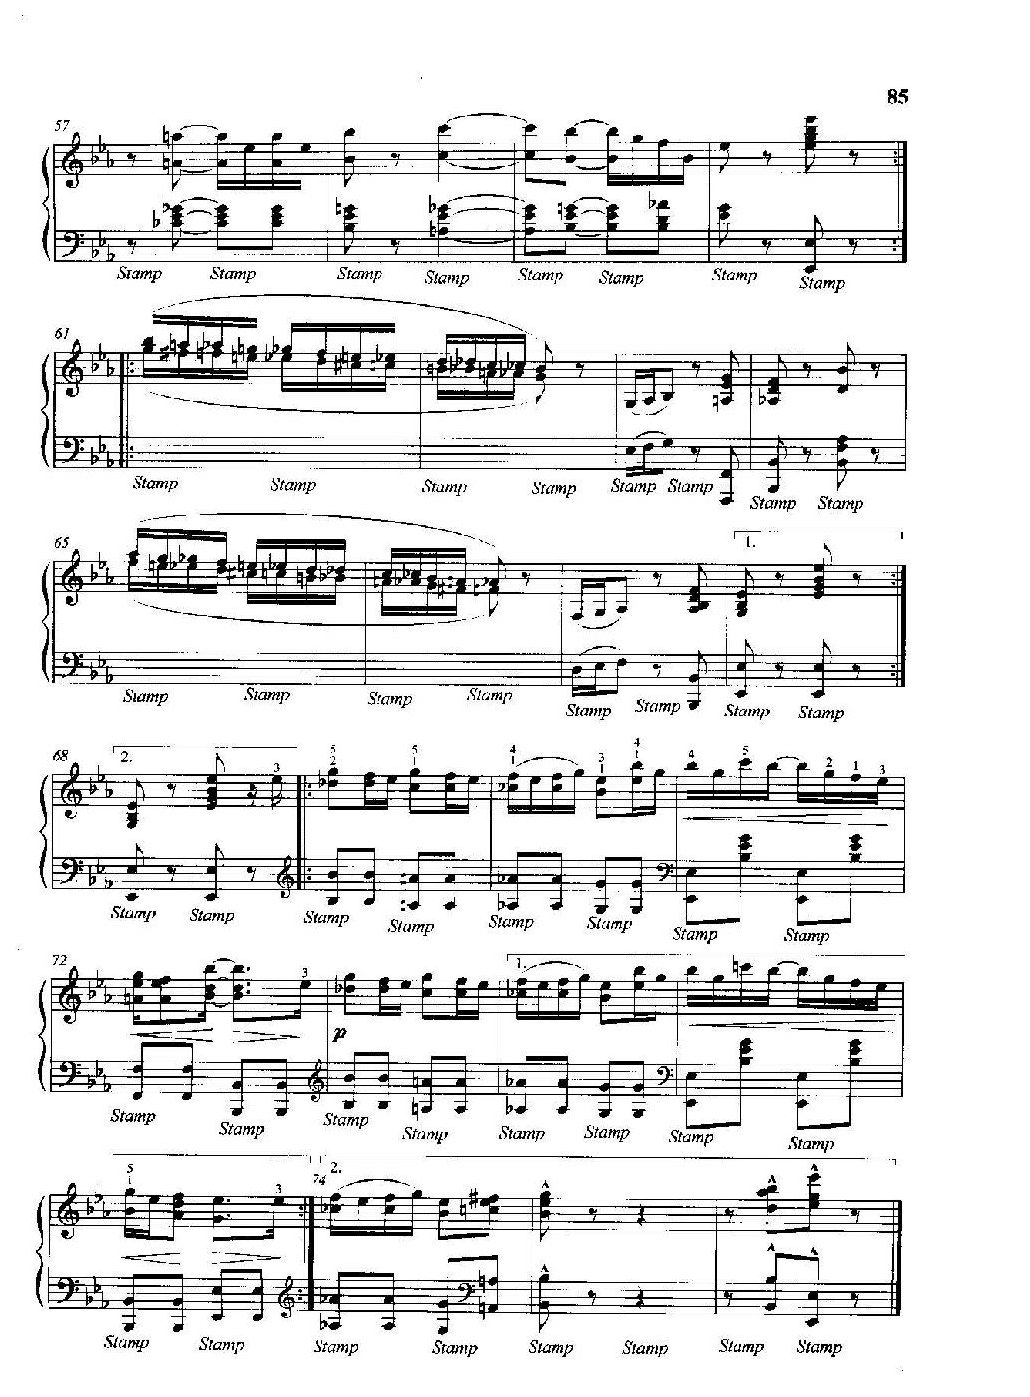 雷格泰姆钢琴乐谱《雷格泰姆之舞》雷格泰姆之王斯科特·乔普林